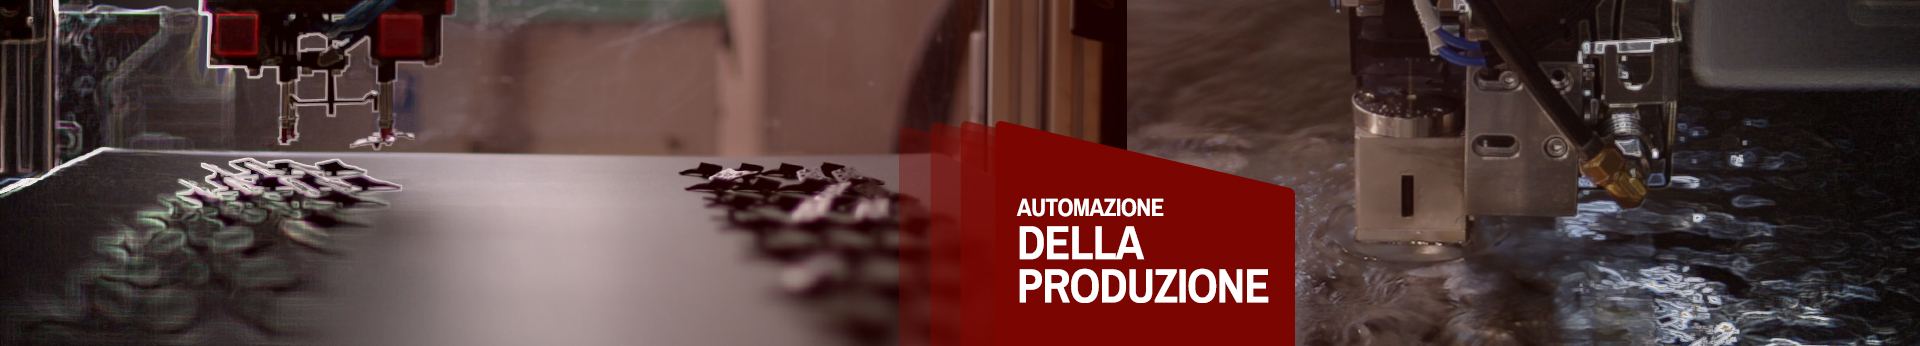 automatyzacja_produkcji_it